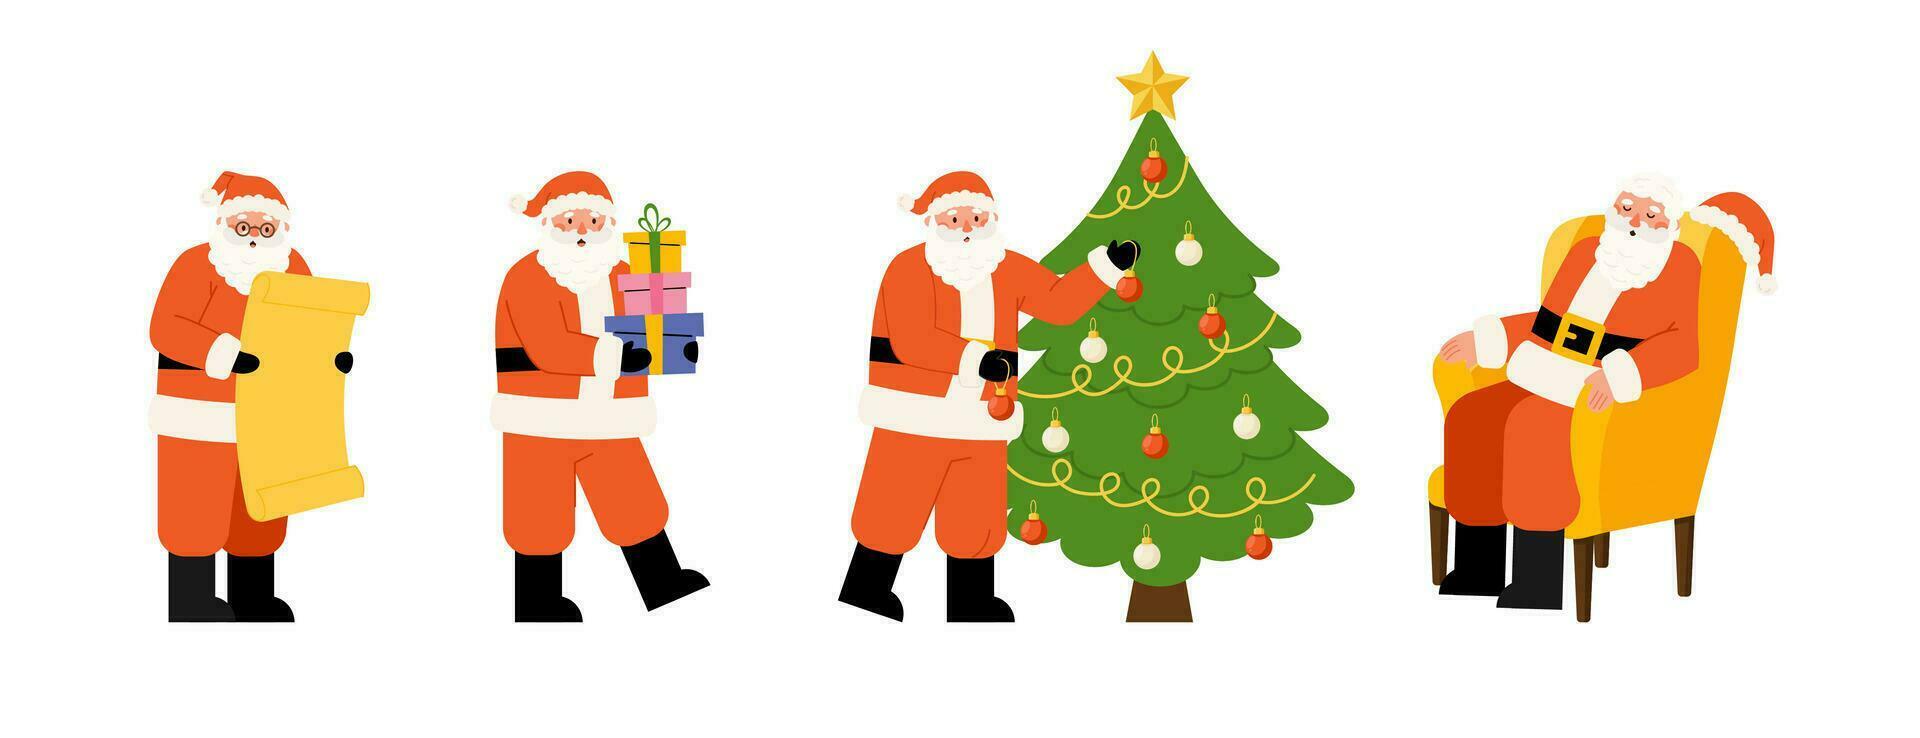 conjunto de Papa Noel cláusulas en diferente poses vector